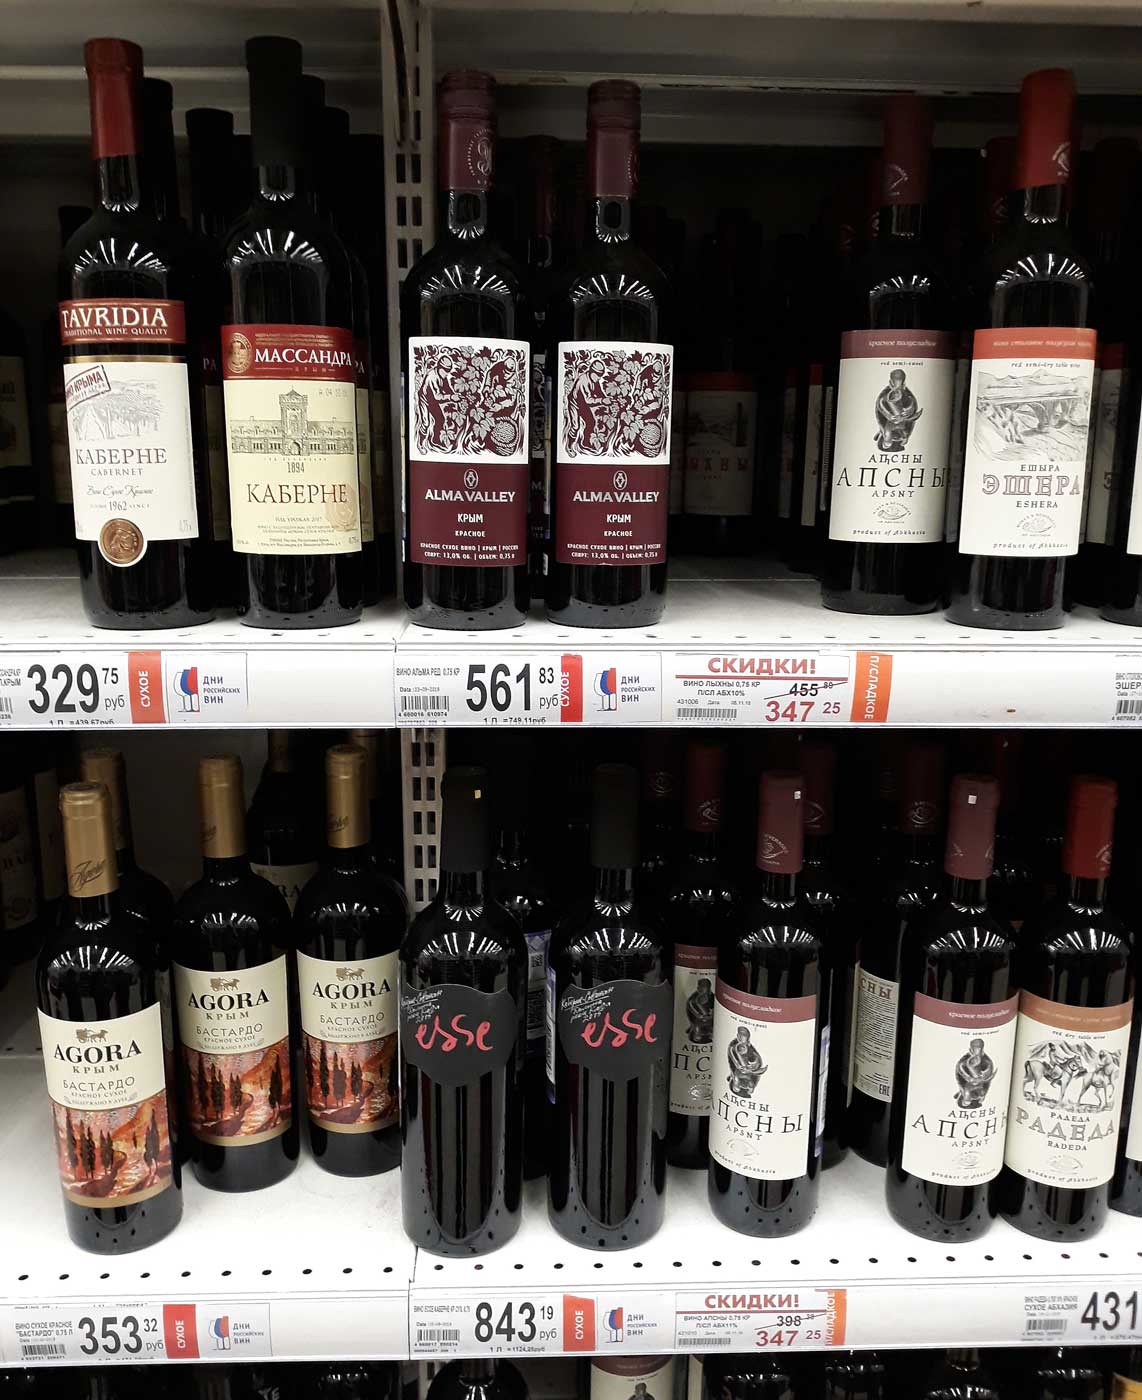 Купить вино в кб. Вино красное КБ. Вино в магазине красное и белое. Вино недорогое. Вино сладкое Ашан.